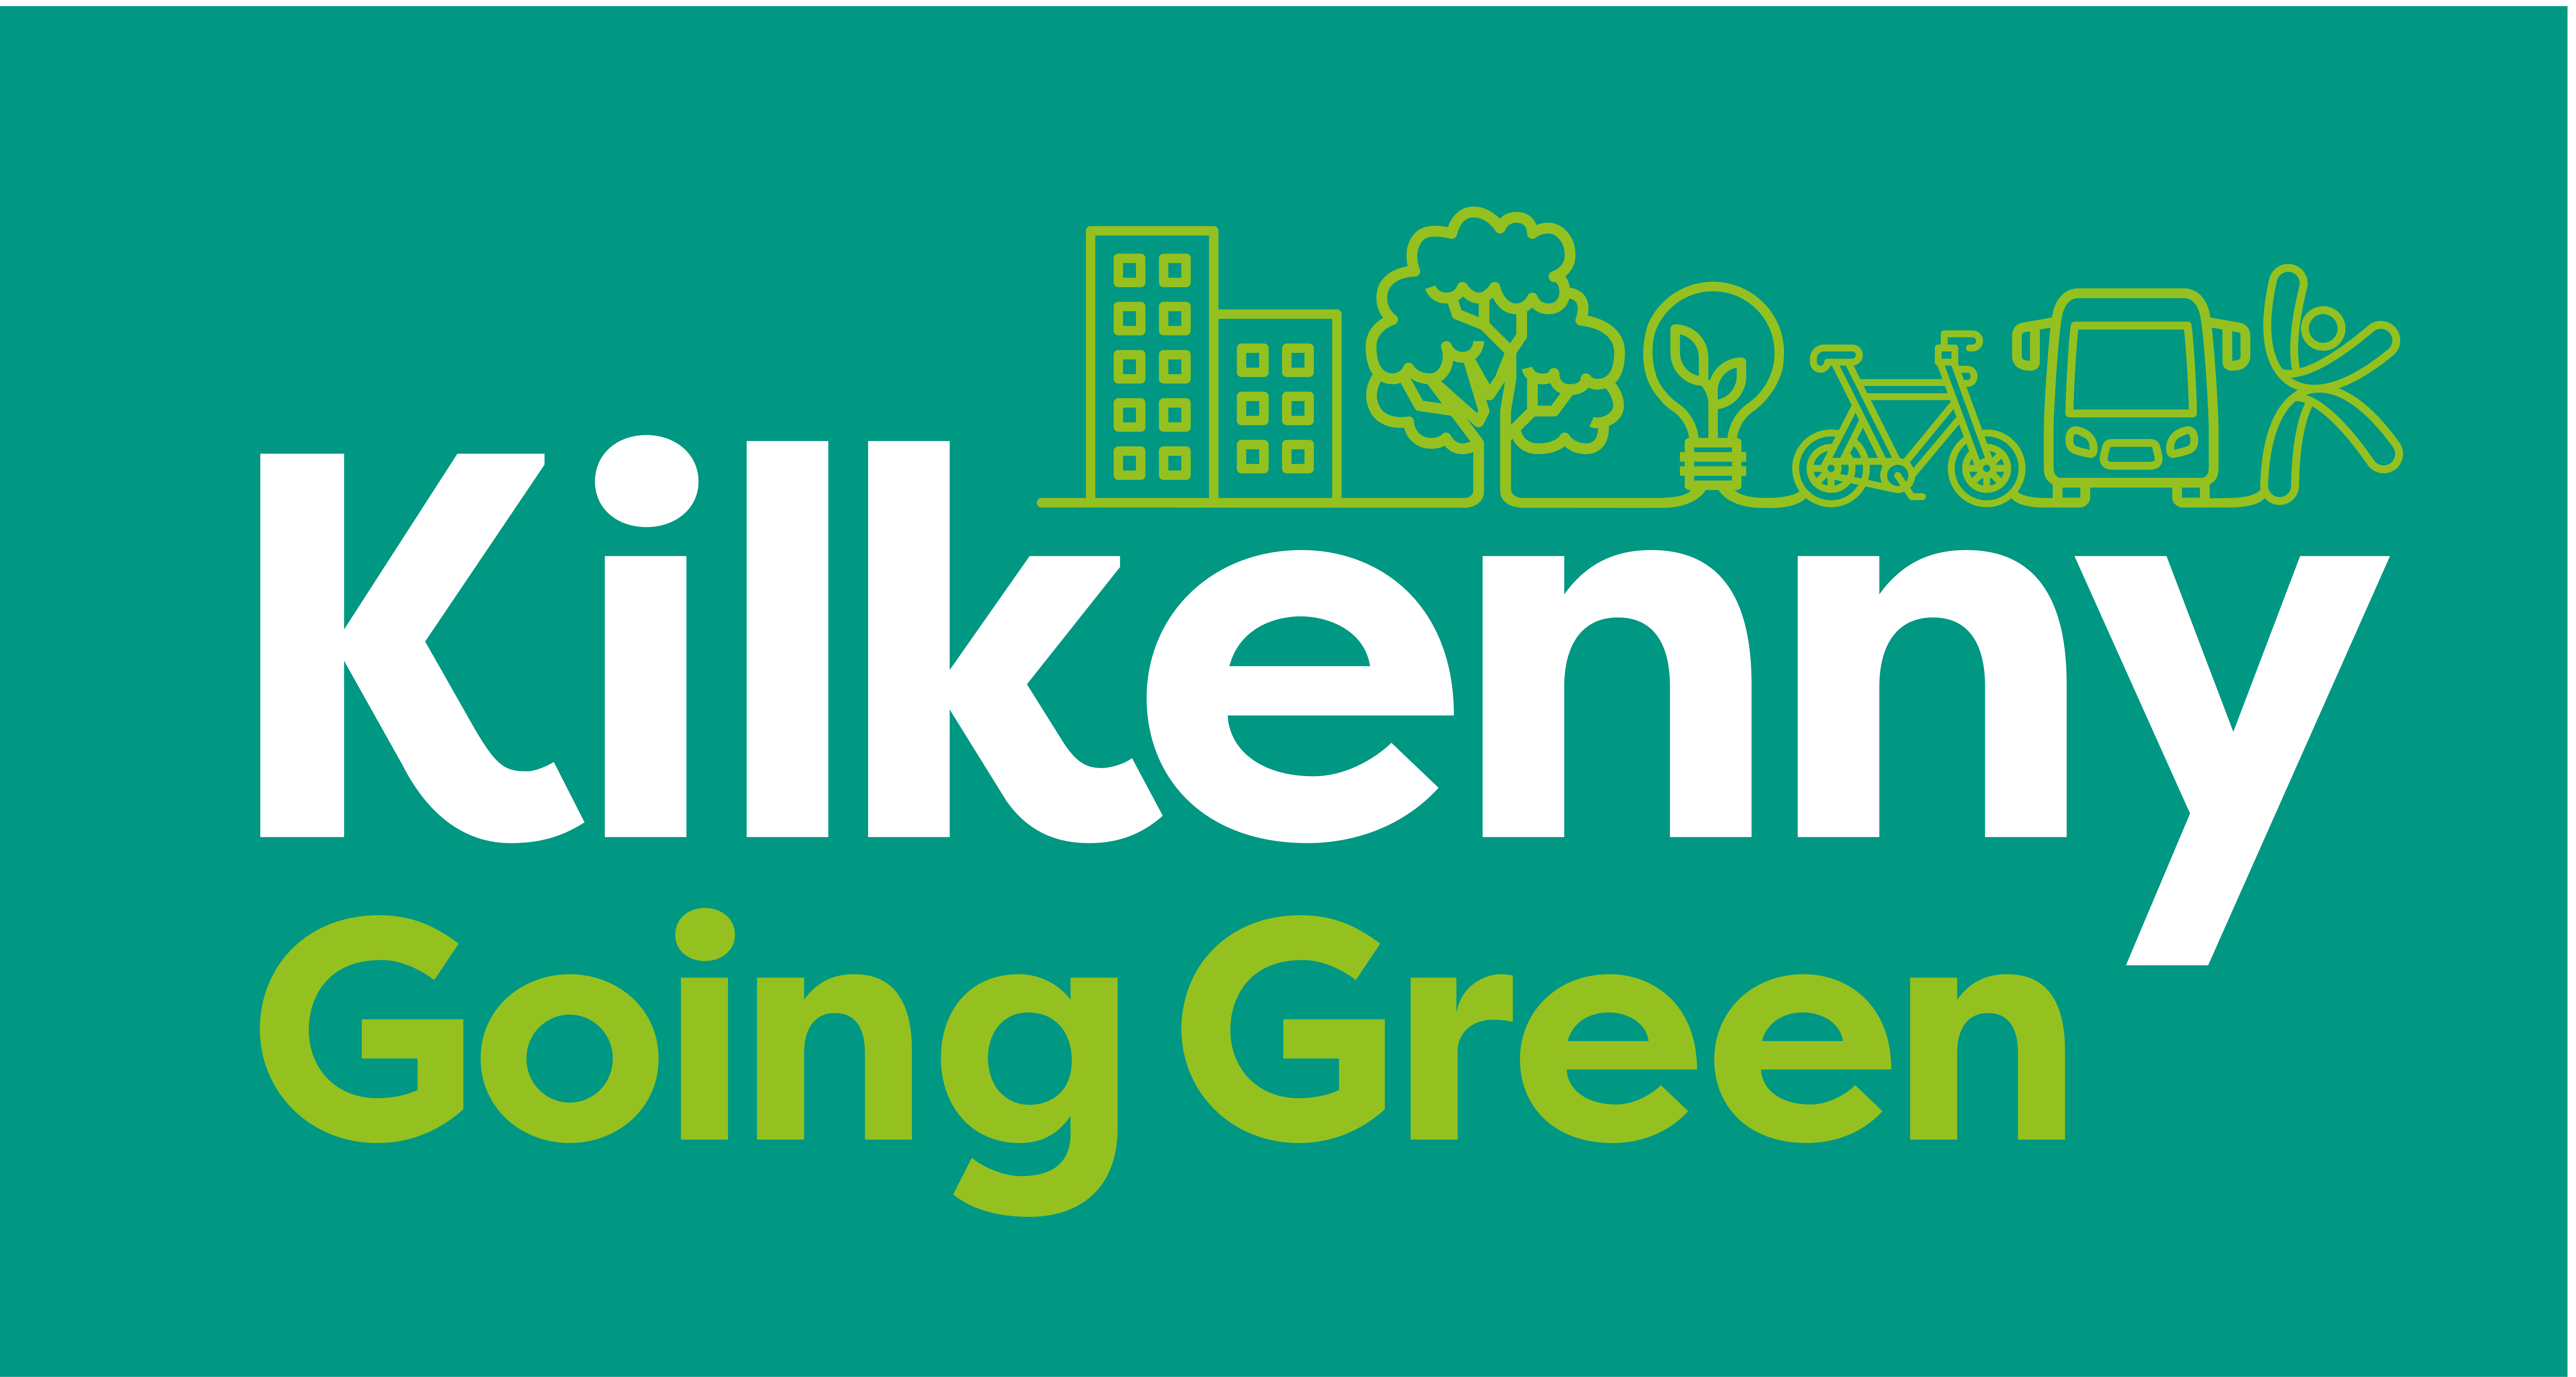 Kilkenny-Going-Green_main-brand-colour-reversed